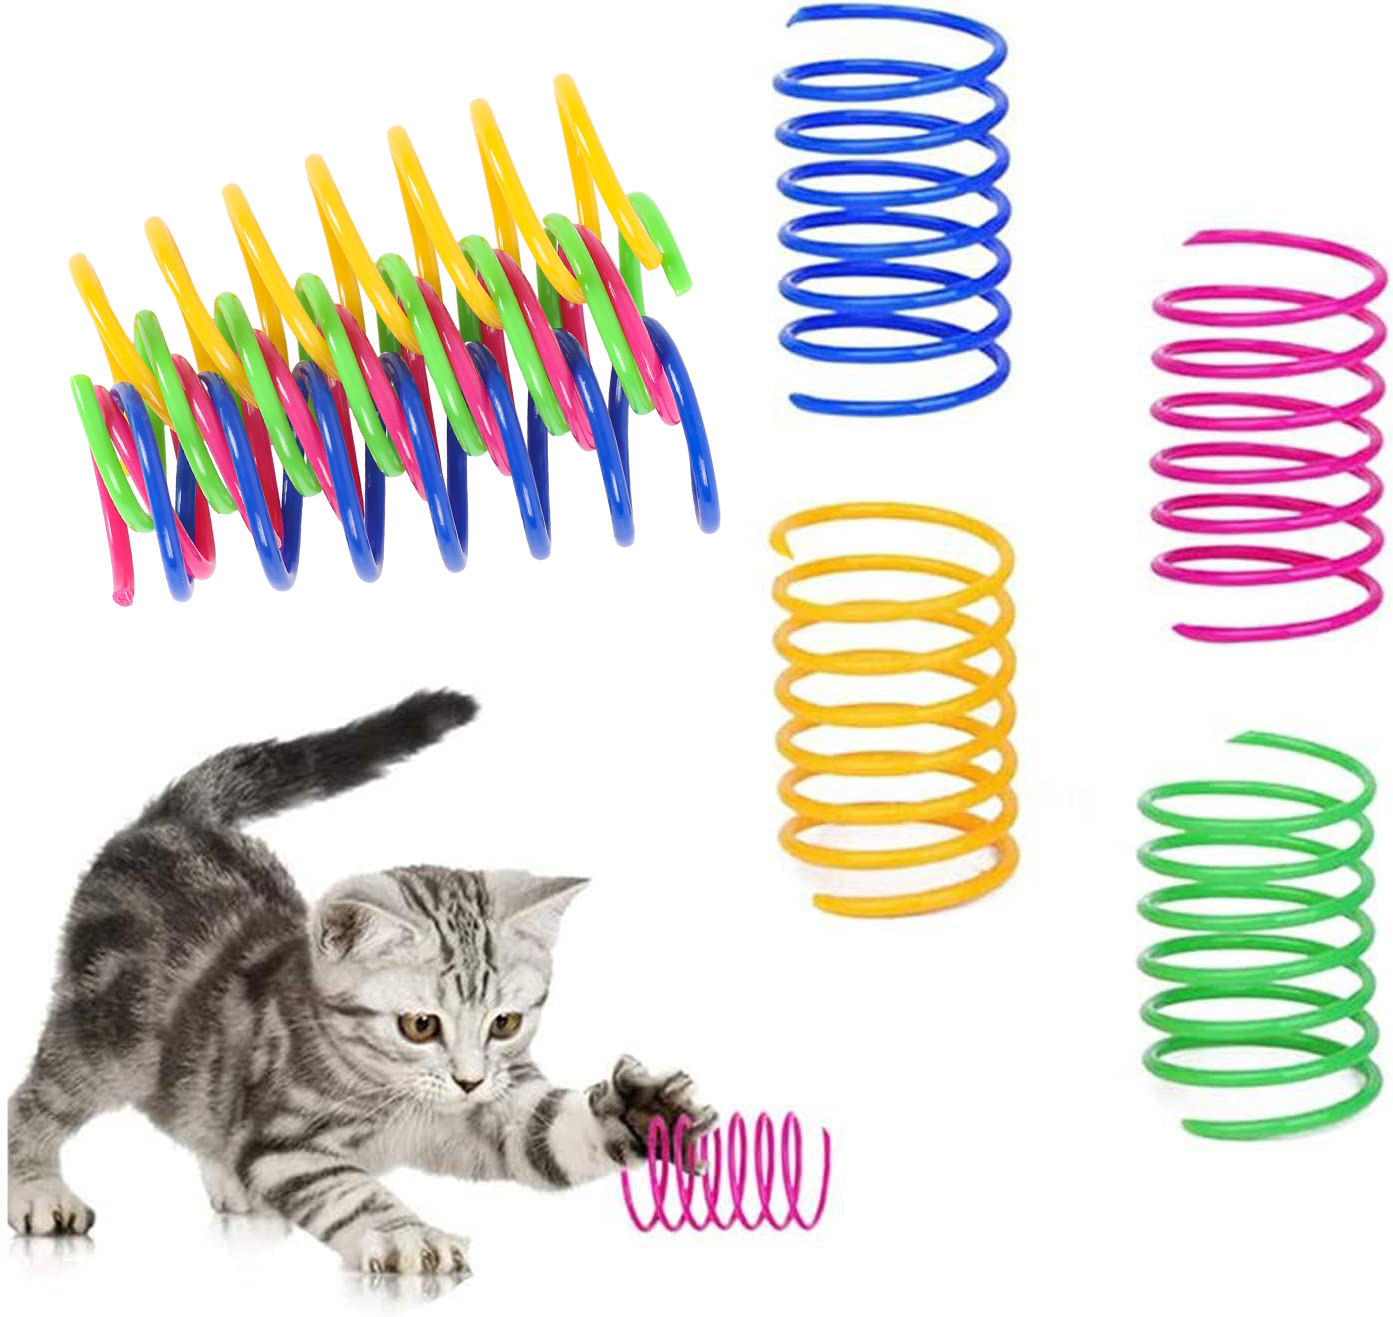 Giocattolo interattivo per gatti con molla a spirale in plastica resistente, confezione da 4 pezzi